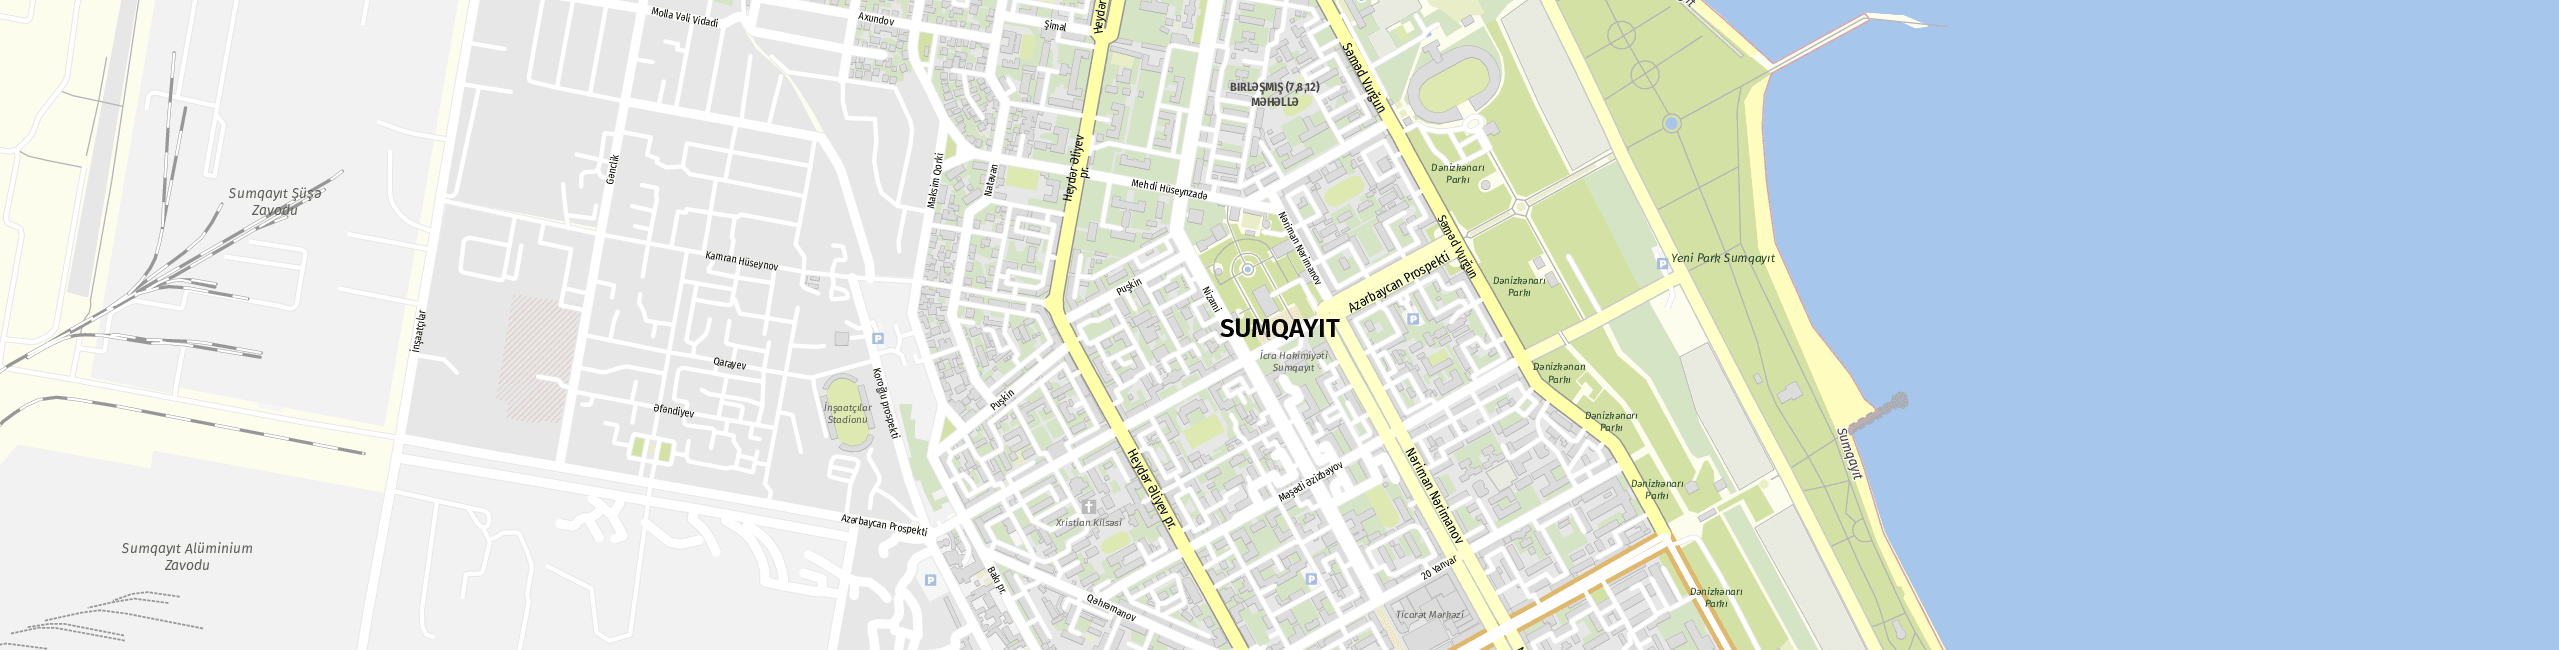 Stadtplan Sumgayit zum Downloaden.